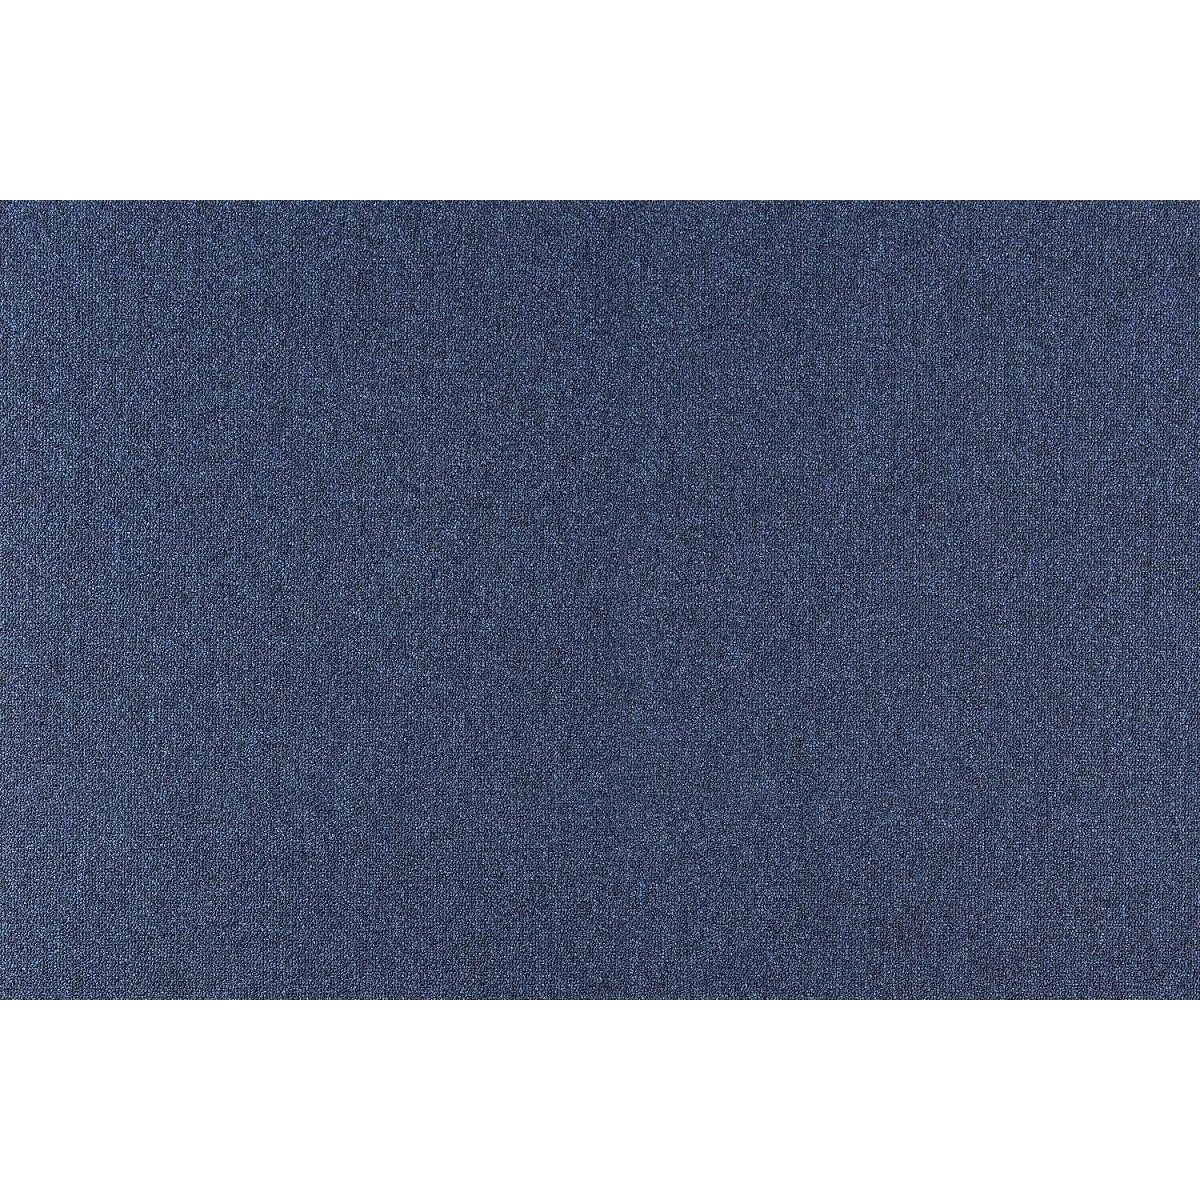 Metrážový koberec Cobalt SDN 64060 - AB tmavě modrý, zátěžový